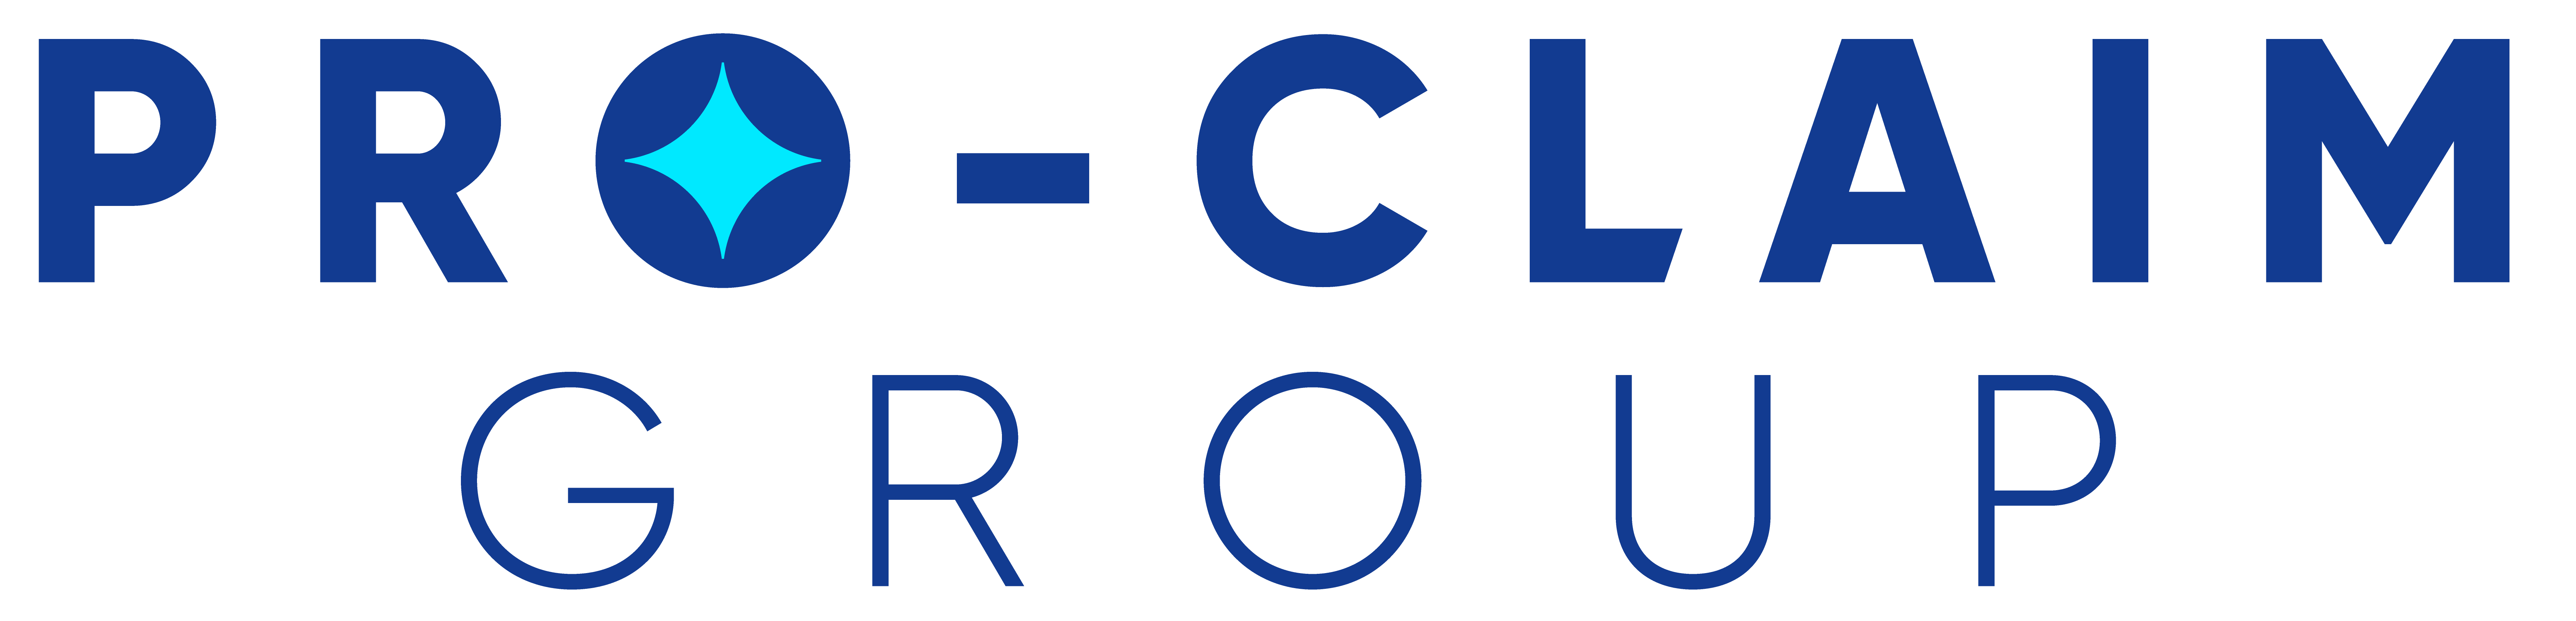 Contractor logo